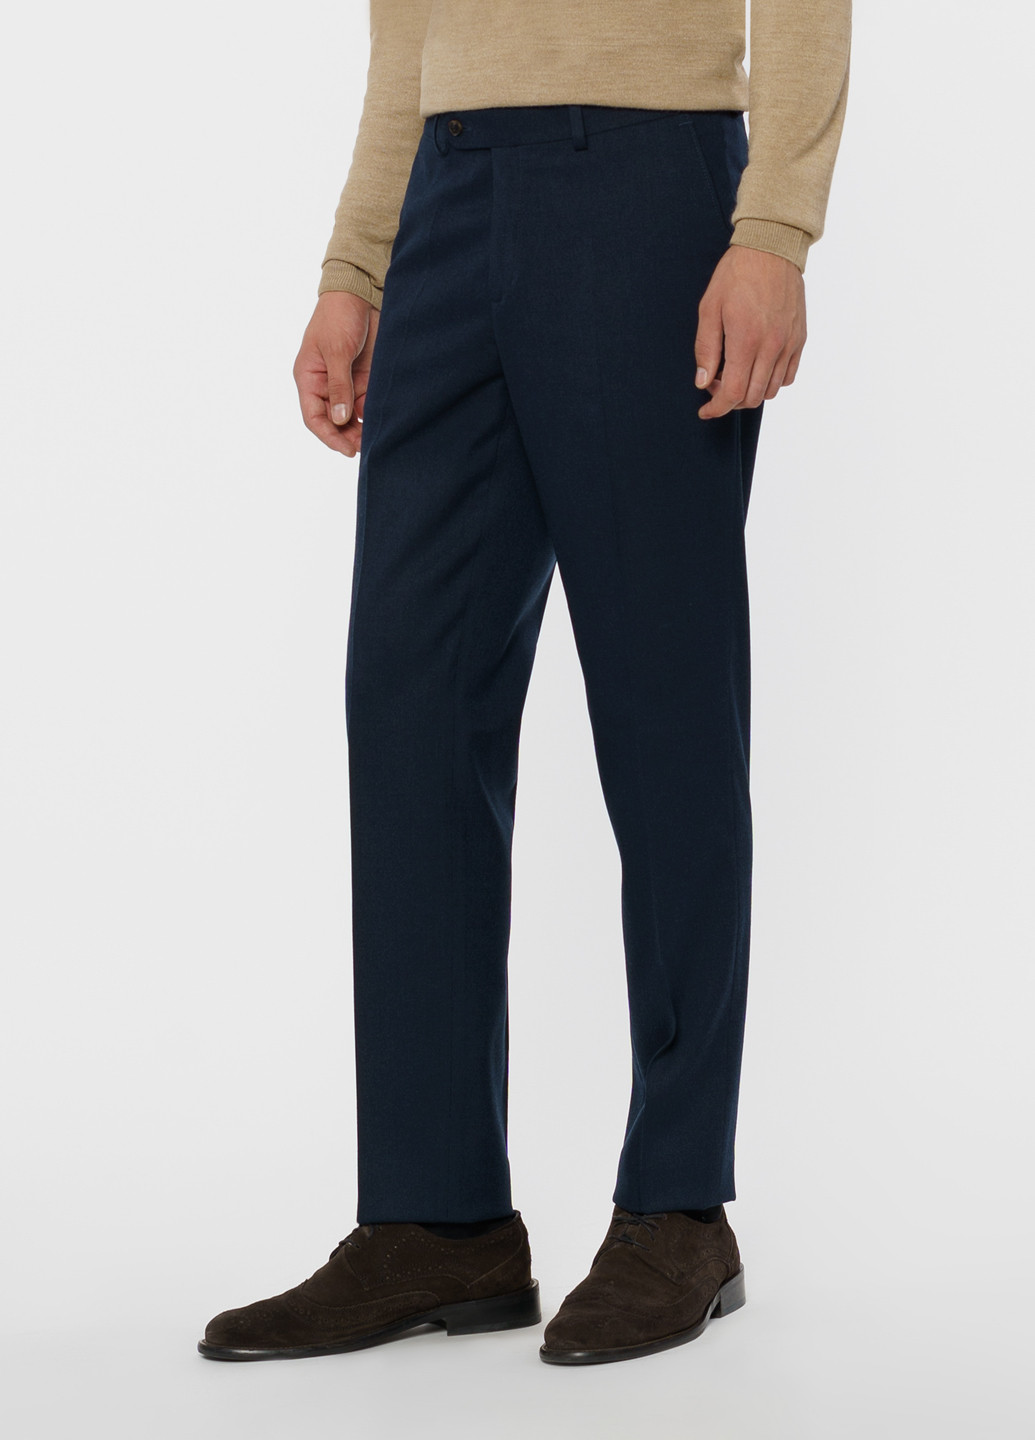 Синие кэжуал зимние брюки Arber